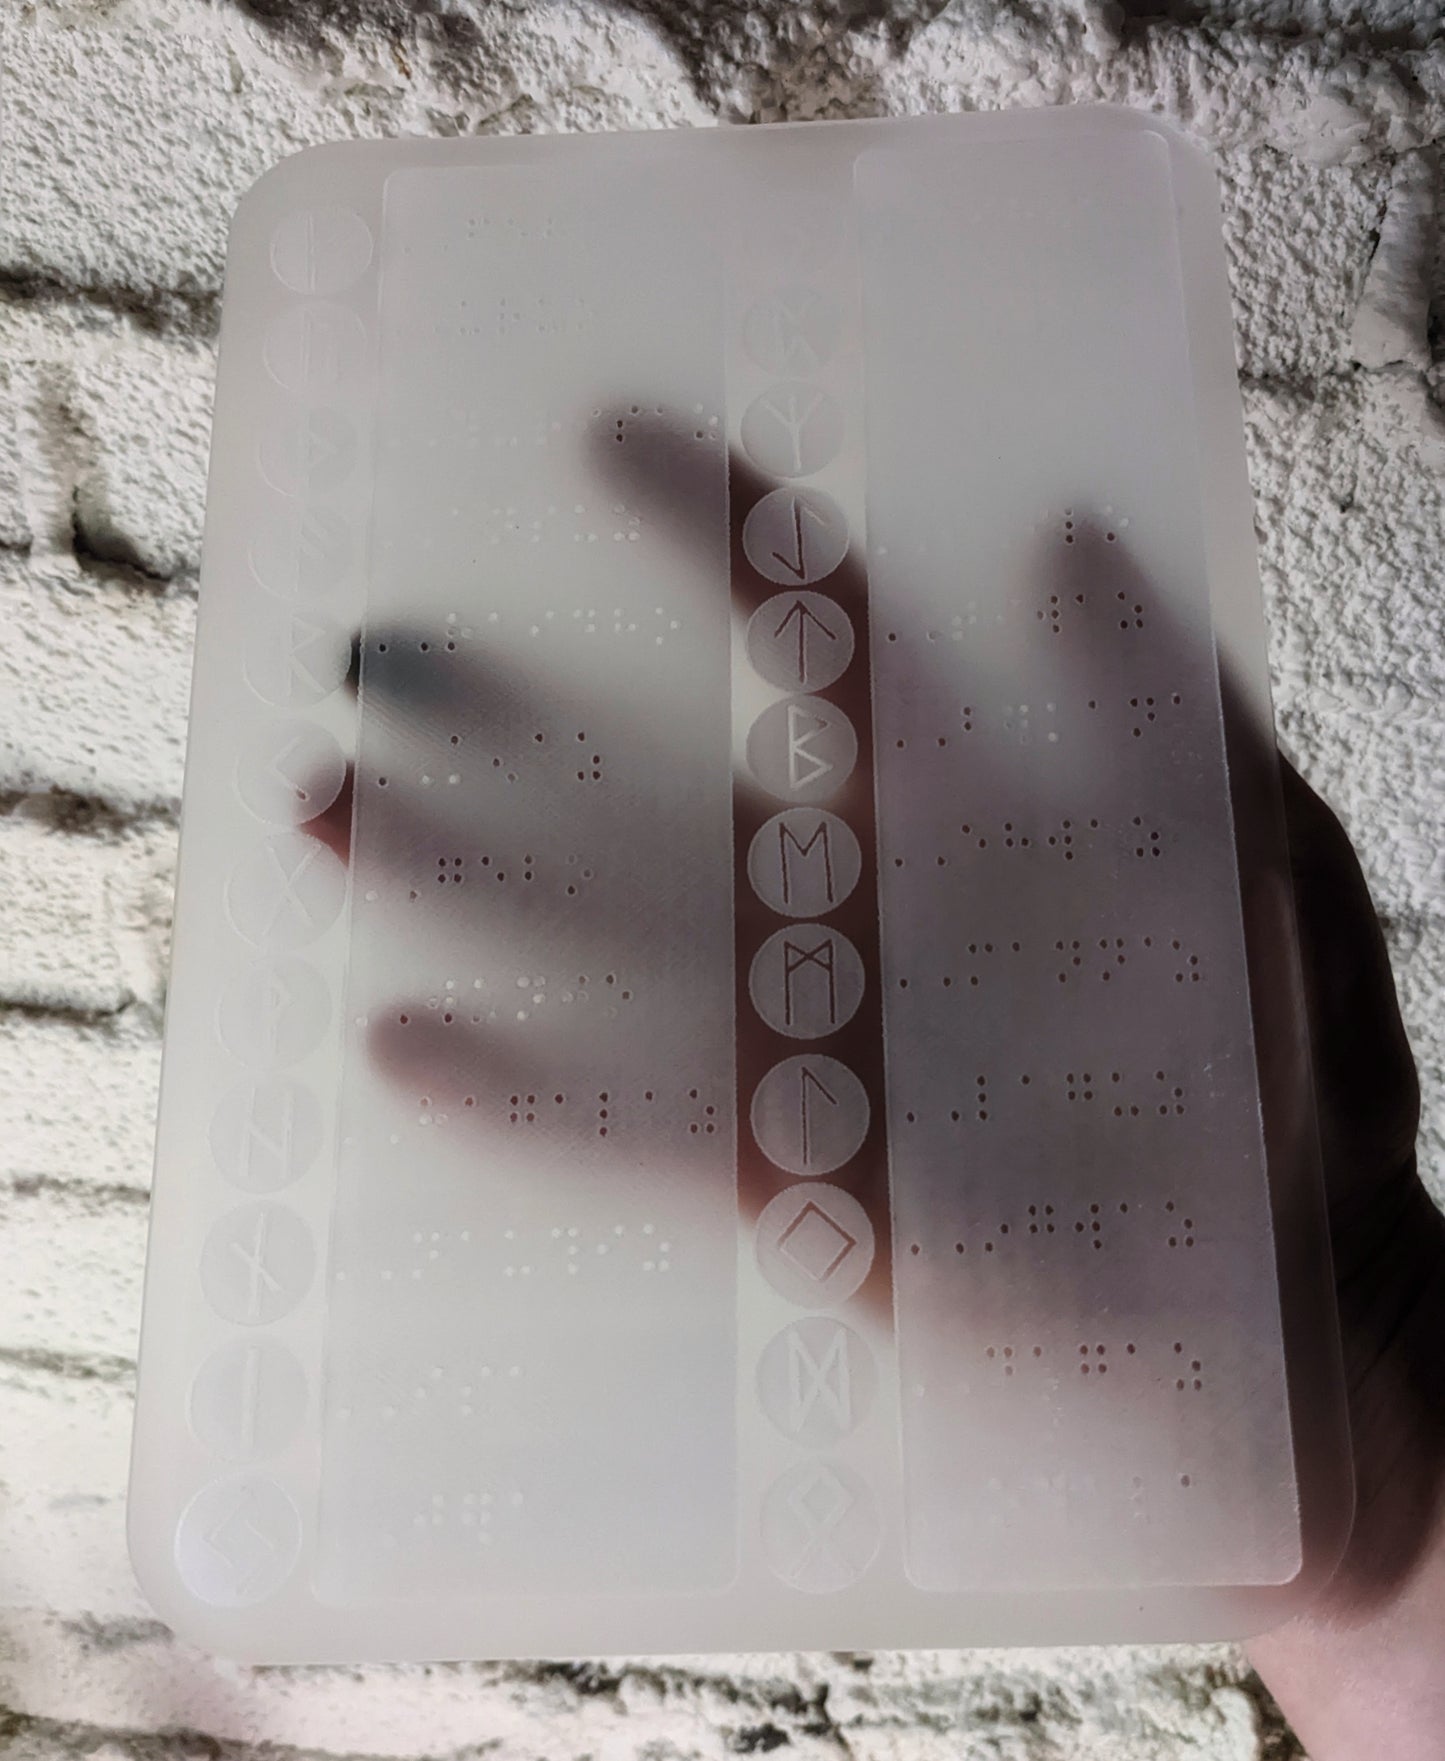 Elder Futhark Braille Rune Board For Blind or Visually Impaired | Tactile Rune Guide